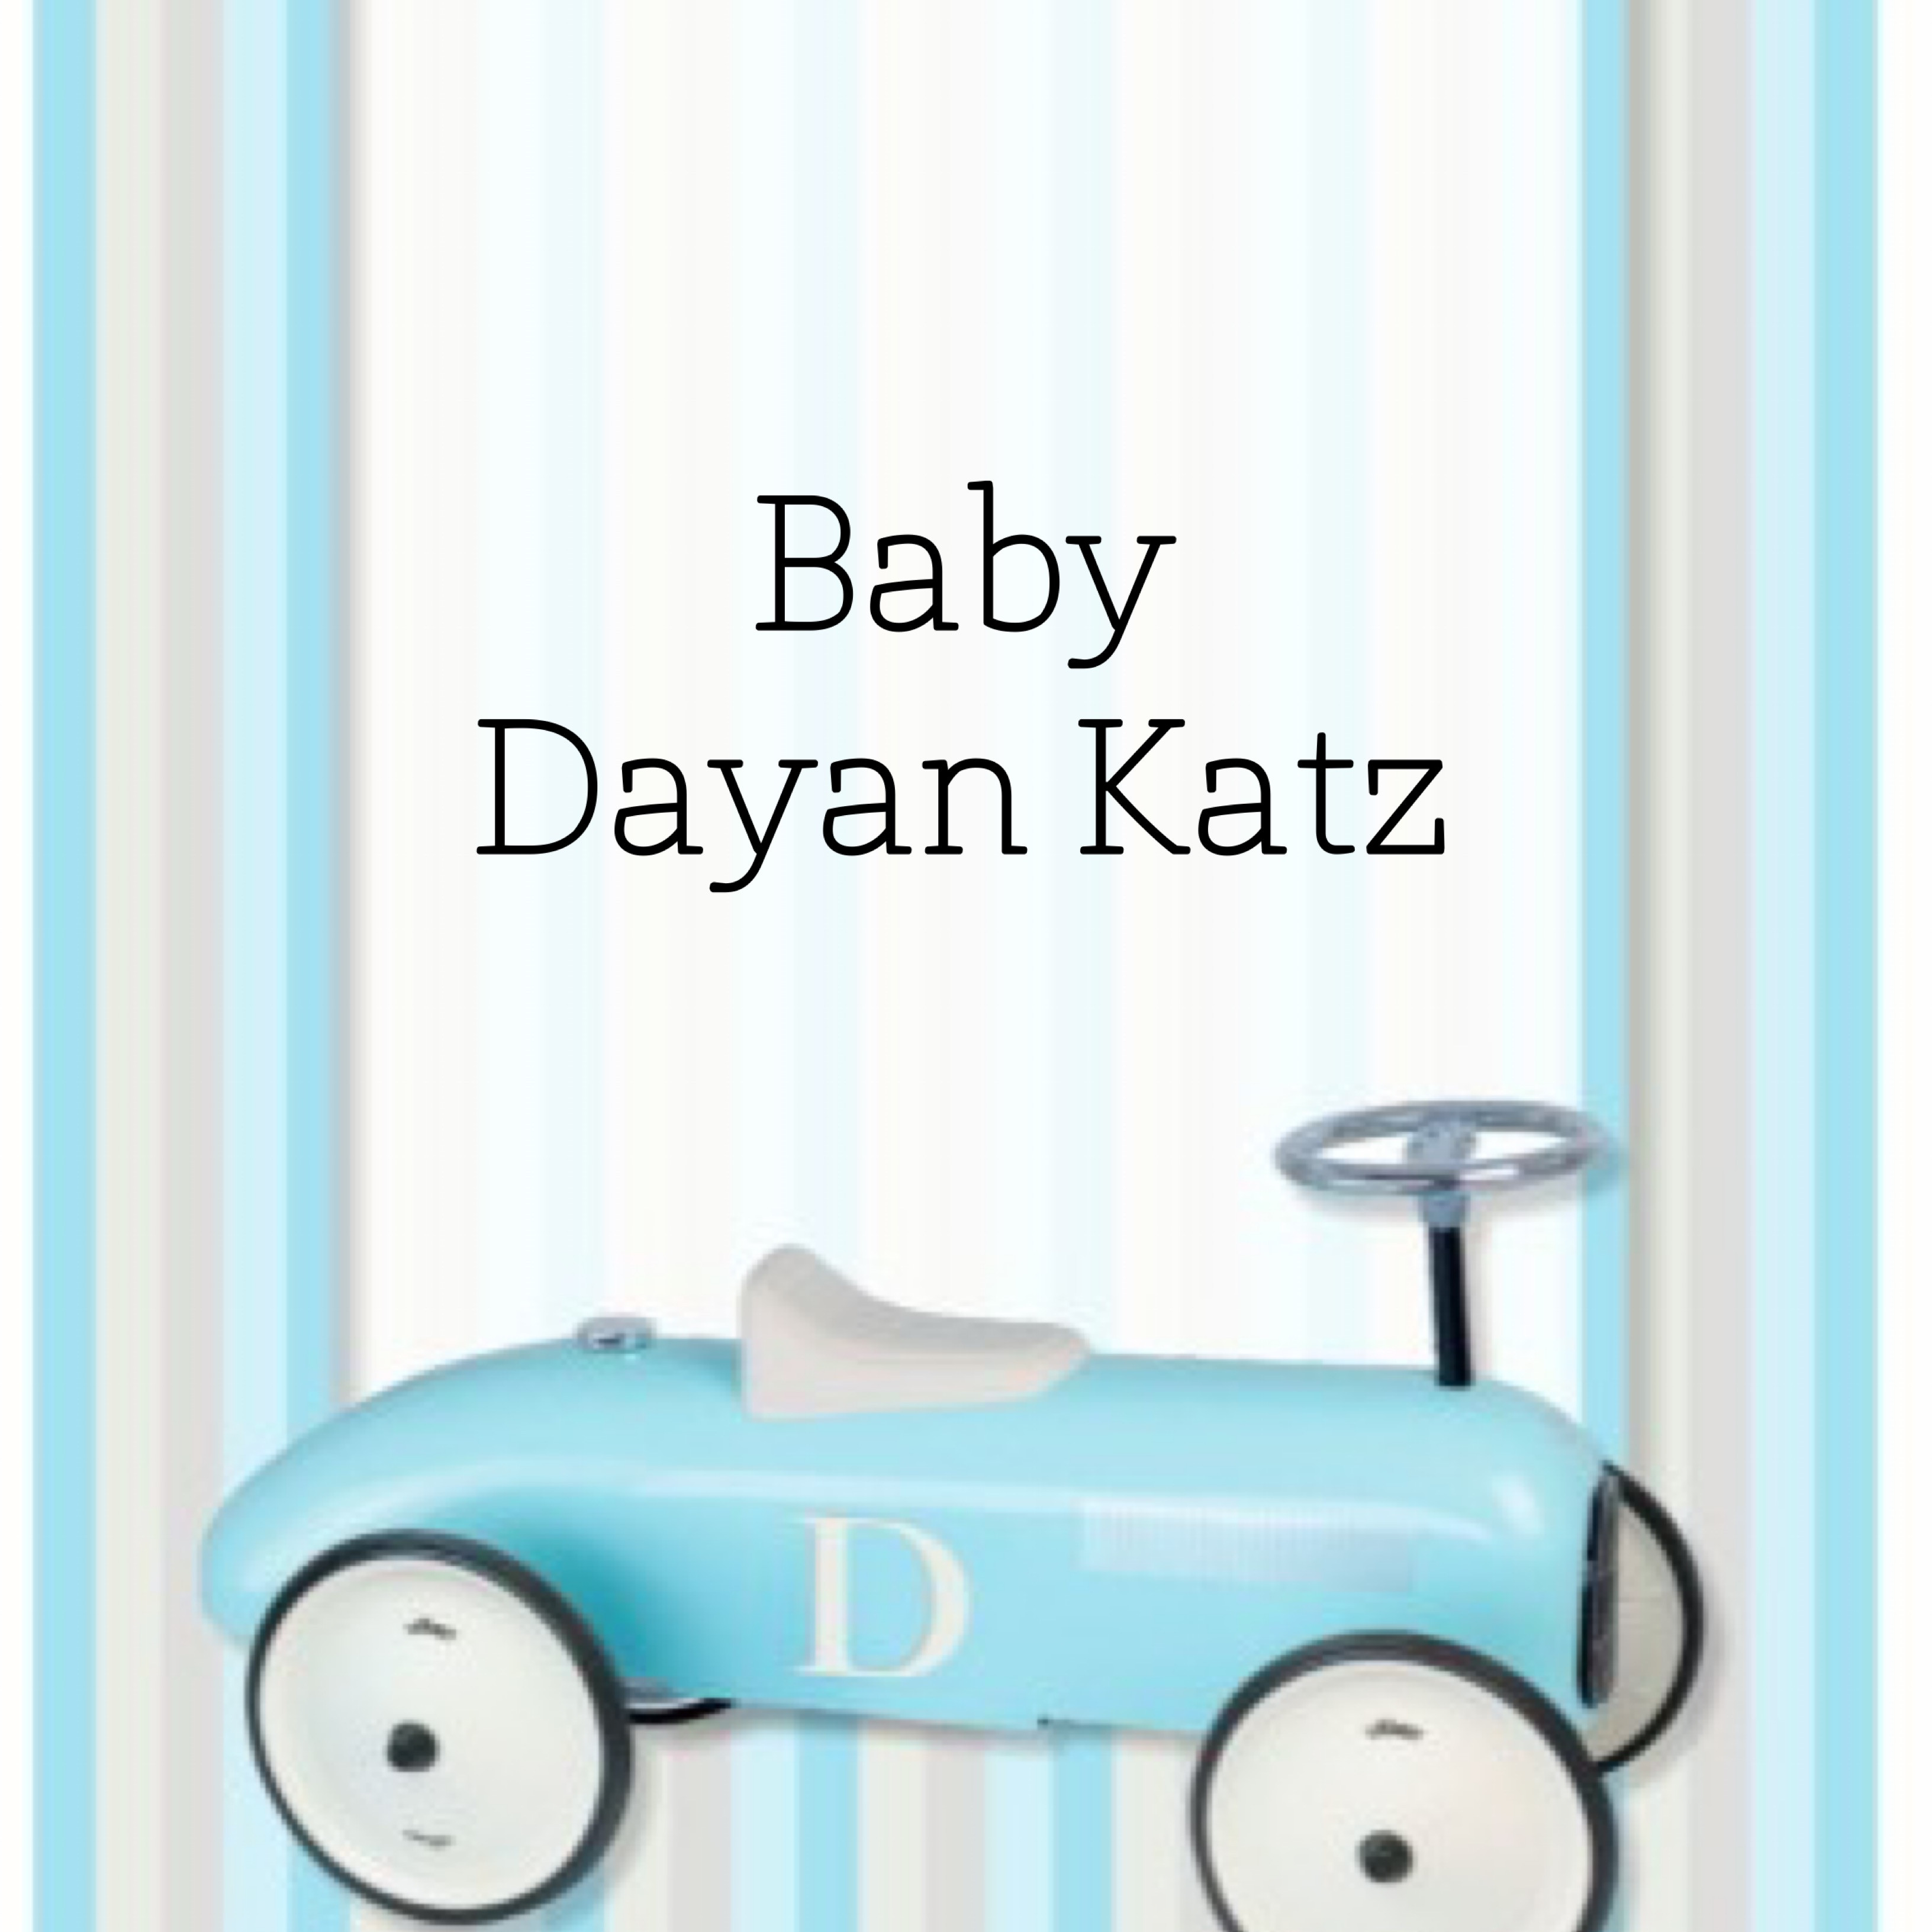 Baby Dayan Katz